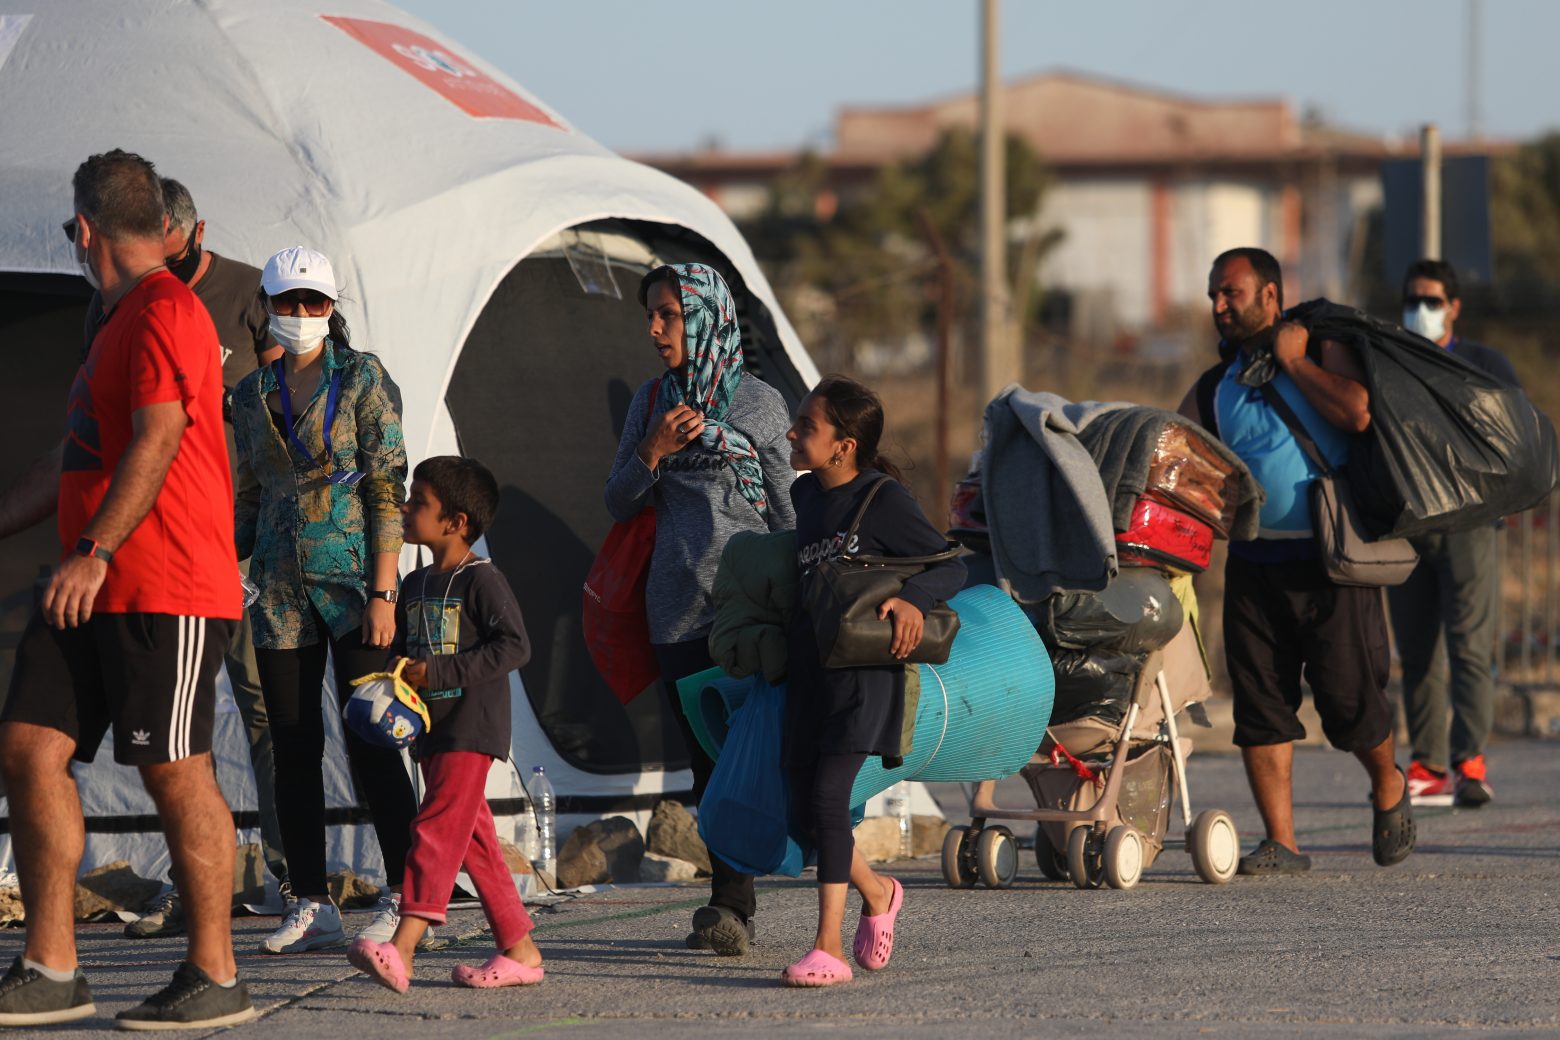 Πρόσφυγες - Μνημόνιο για την ένταξή τους συνυπέγραψαν το υπουργείο Μετανάστευσης και η Ύπατη Αρμοστεία του ΟΗΕ